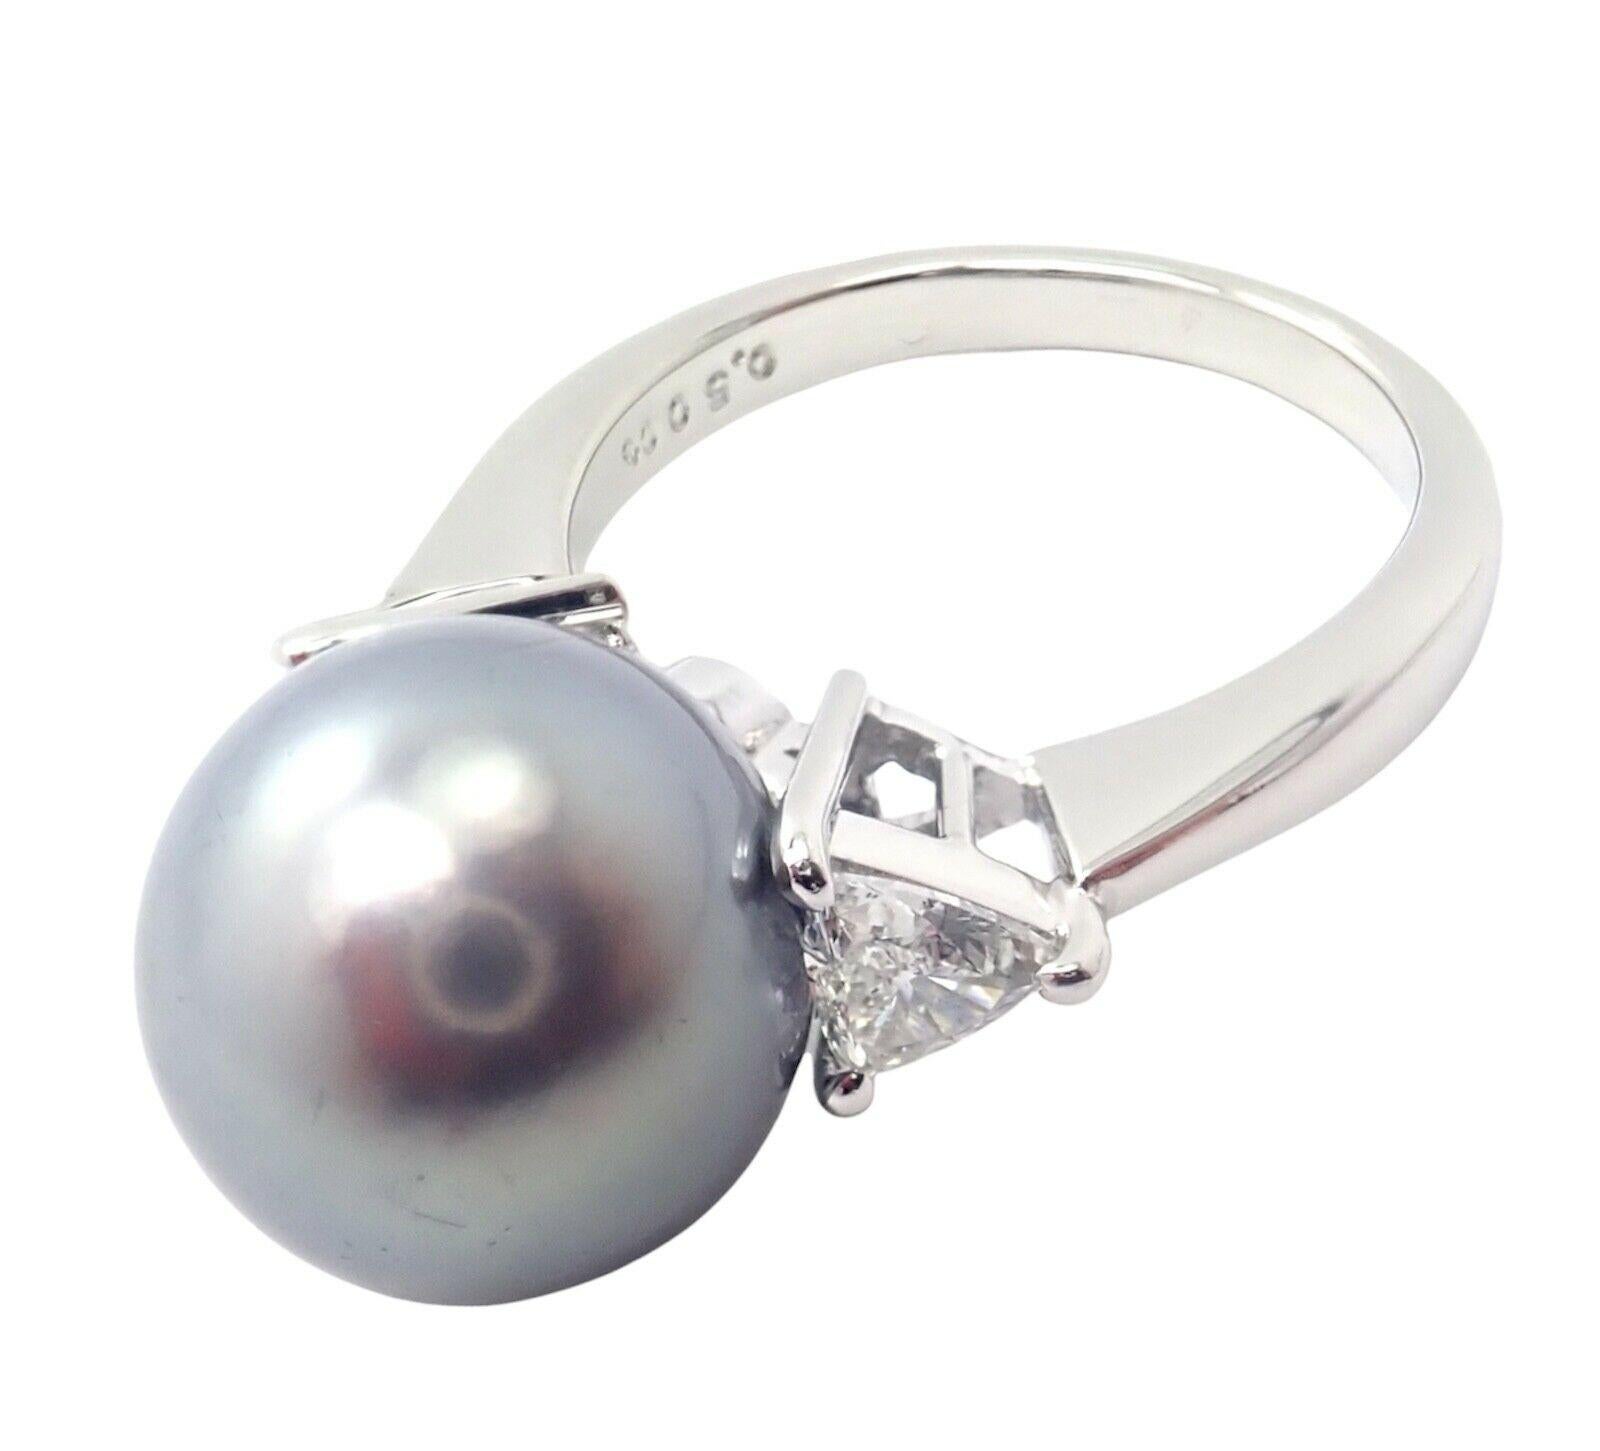 Platin-Diamant-Ring mit 12 mm Tahiti-Perle von Mikimoto. 
Mit 2x Billion Schliff VS1 Klarheit, E Farbe Diamanten Gesamtgewicht ca. .50ct
1 x 12mm Tahiti-Südseeperle 
Farbe Gray
Qualitätsstufe A+
Einzelheiten: 
Ringgröße: 5.5
Gewicht: 7.9